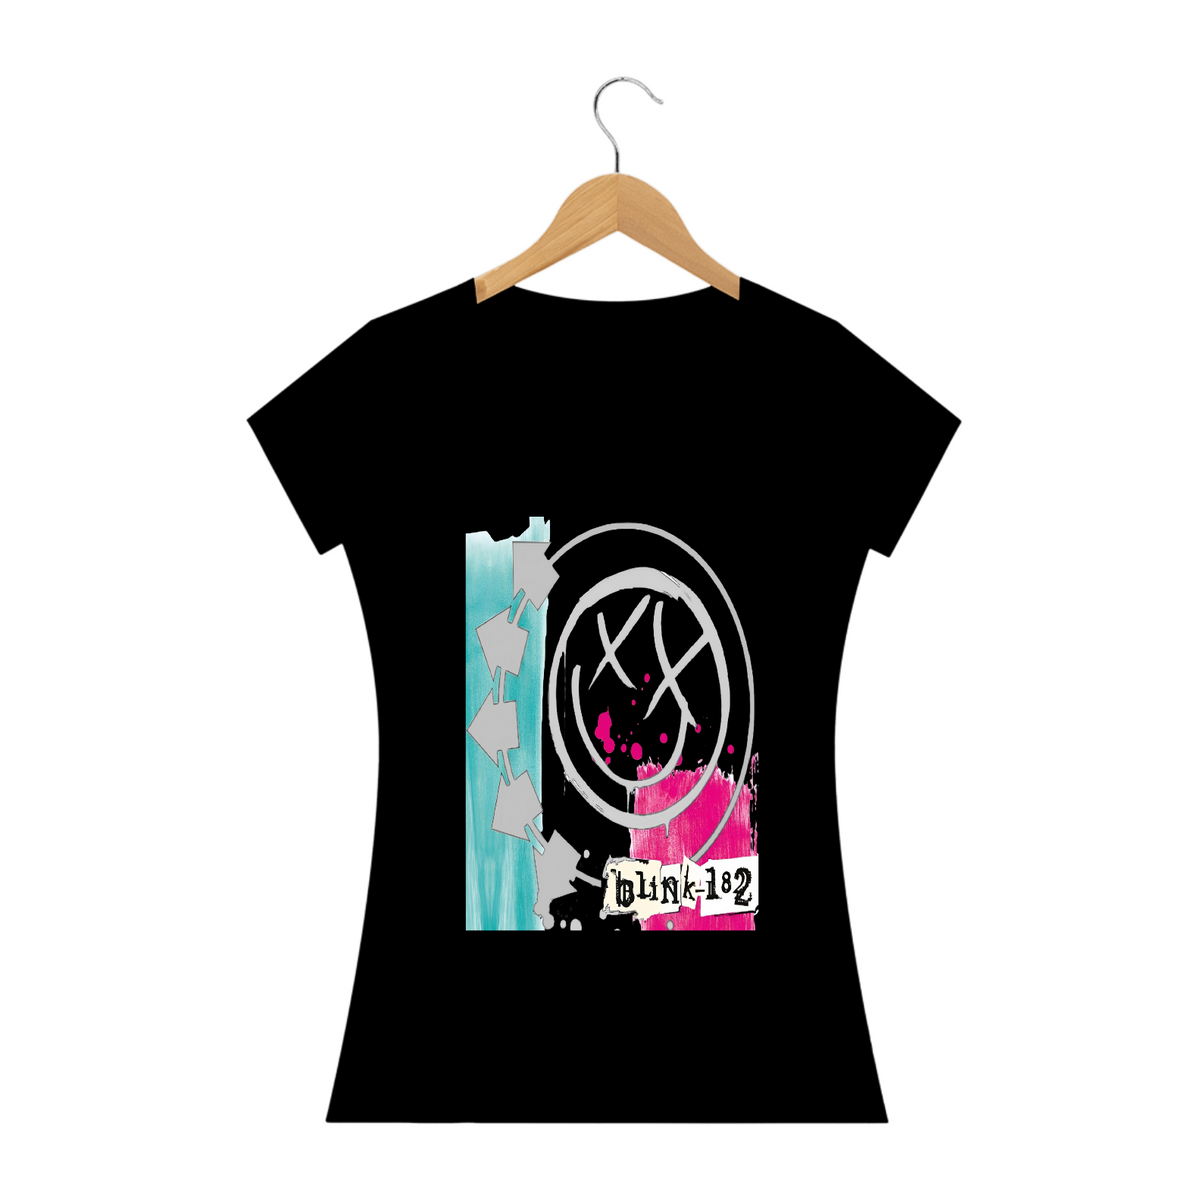 Nome do produto: Camiseta blink 182  Quality Preta  Feminina  Self titled 2003 